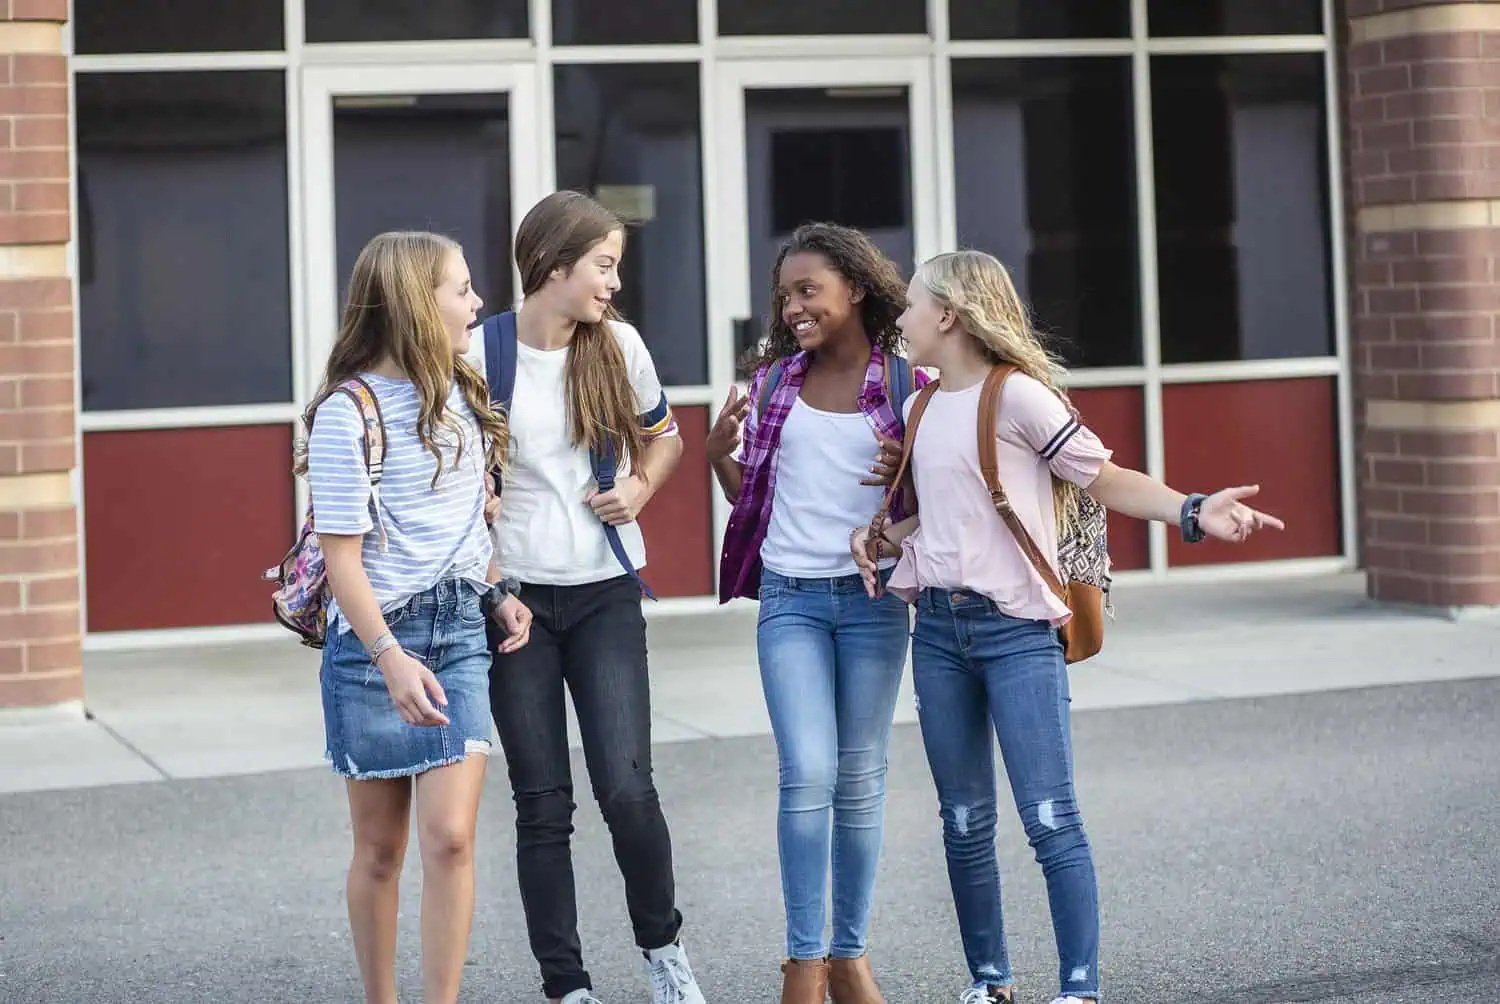 Middle school teen girls talking outside the school